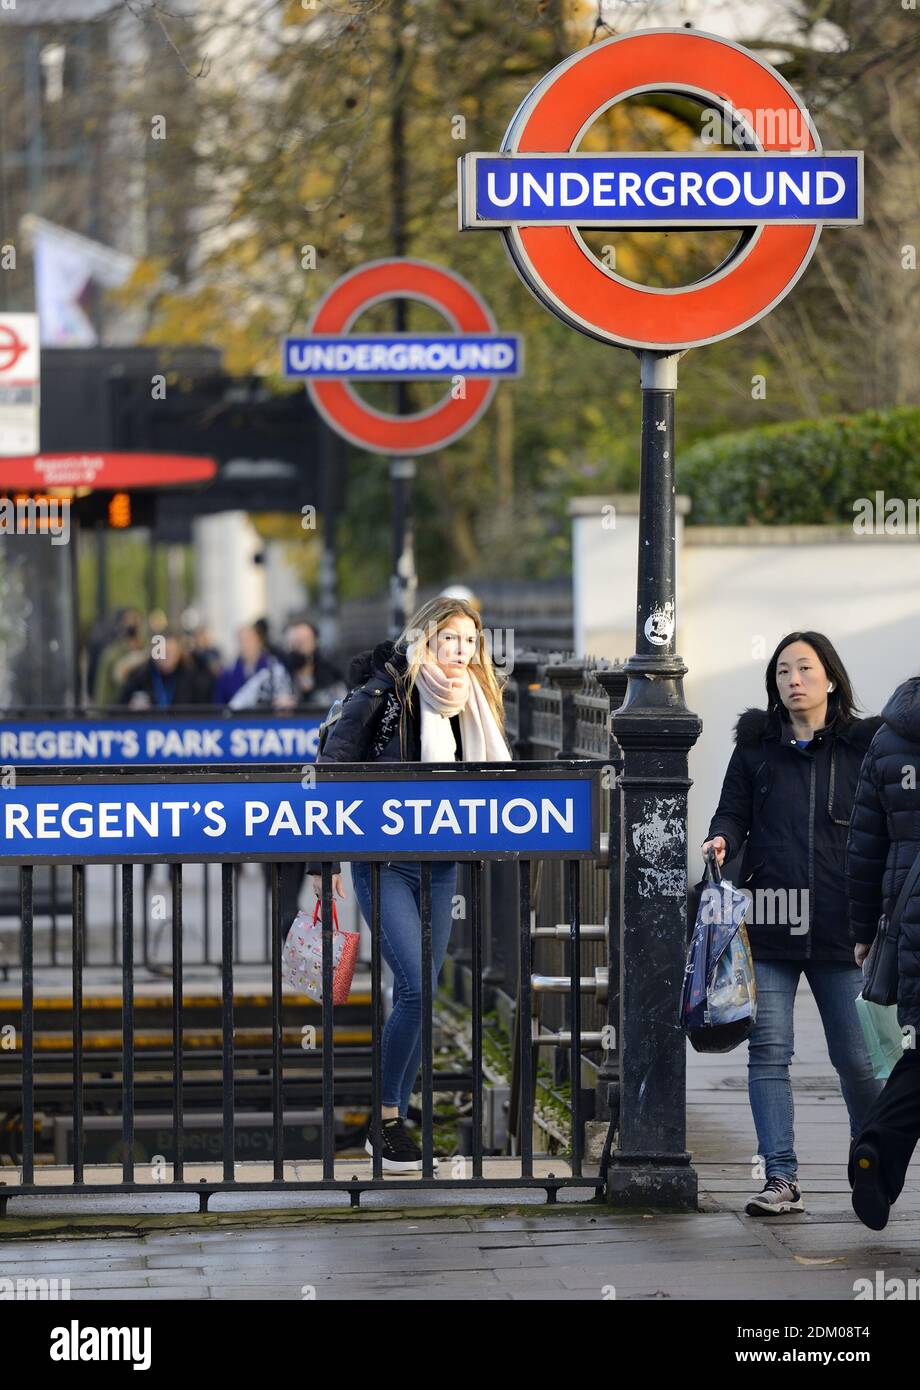 Londra, Inghilterra, Regno Unito. Ingresso alla stazione della metropolitana Regent's Park su Marylebone Road Foto Stock